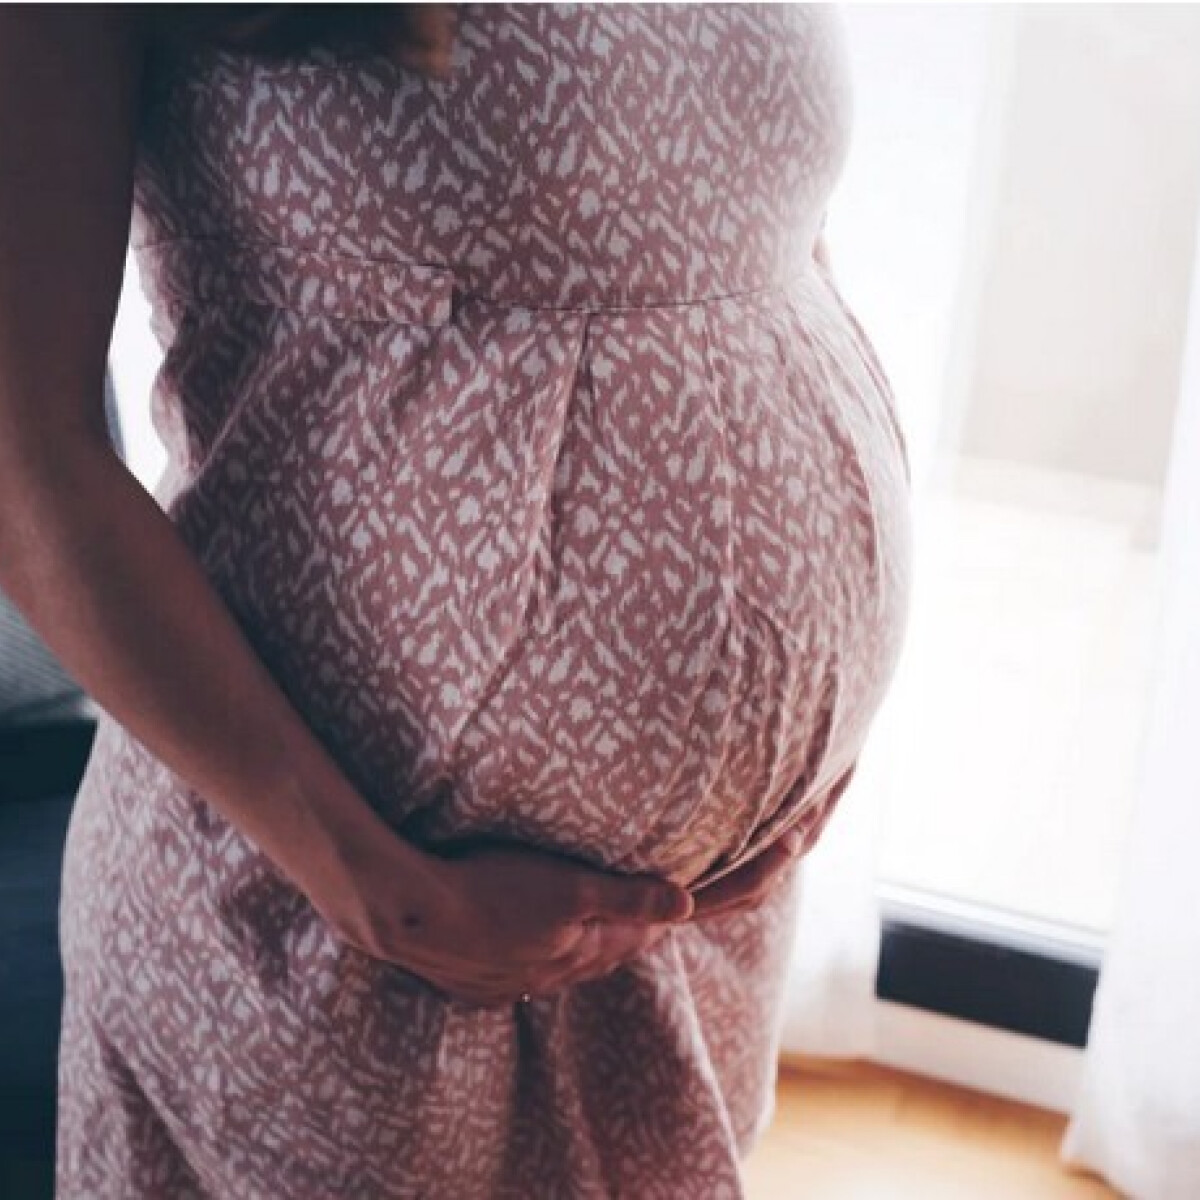 Meglepő oka van a várandós nők kívánósságának – ezt biztosan nem gondoltad